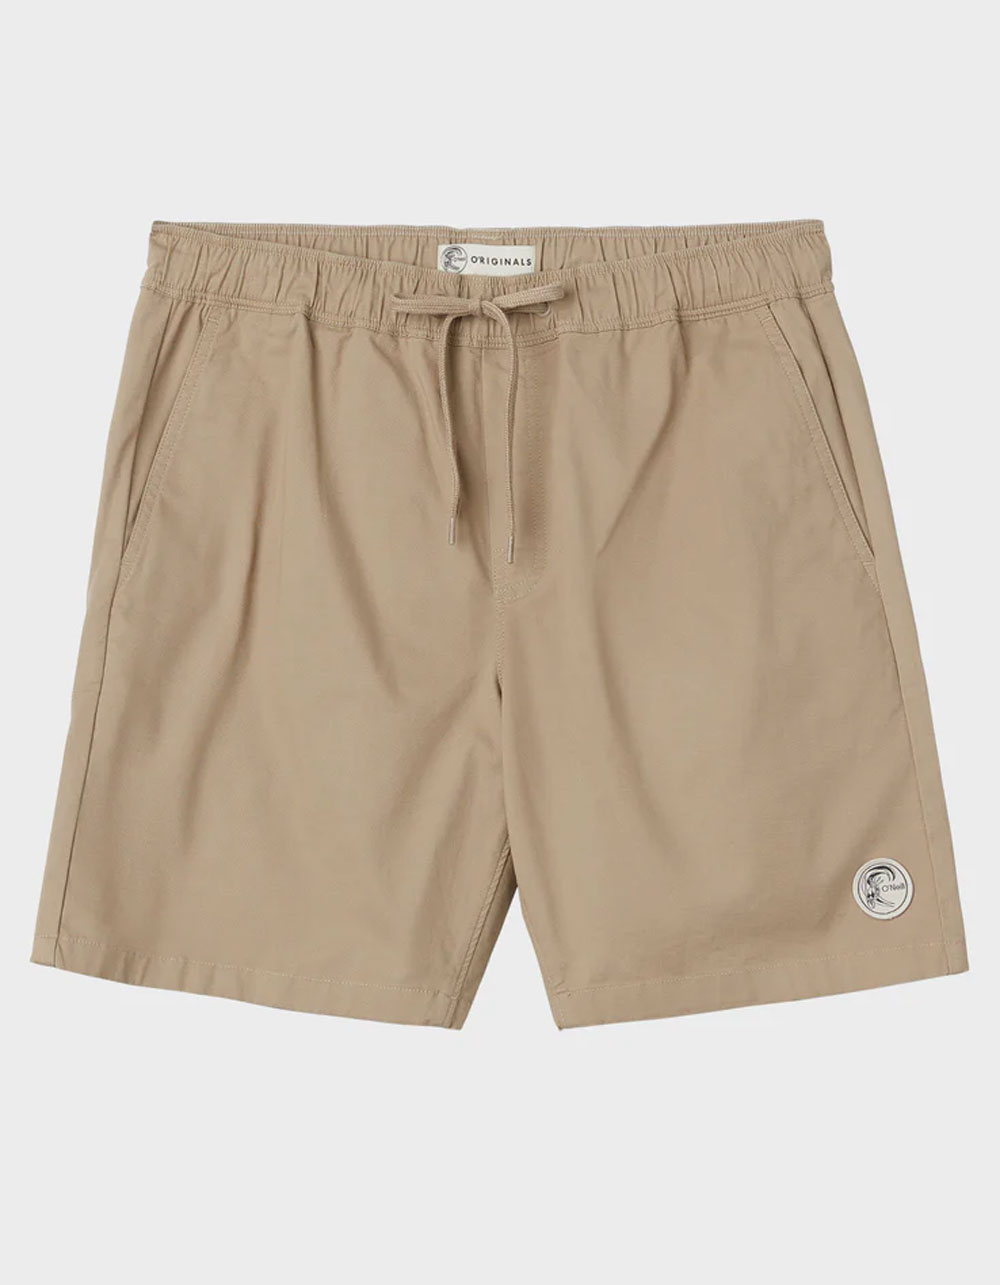 O'NEILL Porter Mens 18" Elastic Waist Shorts